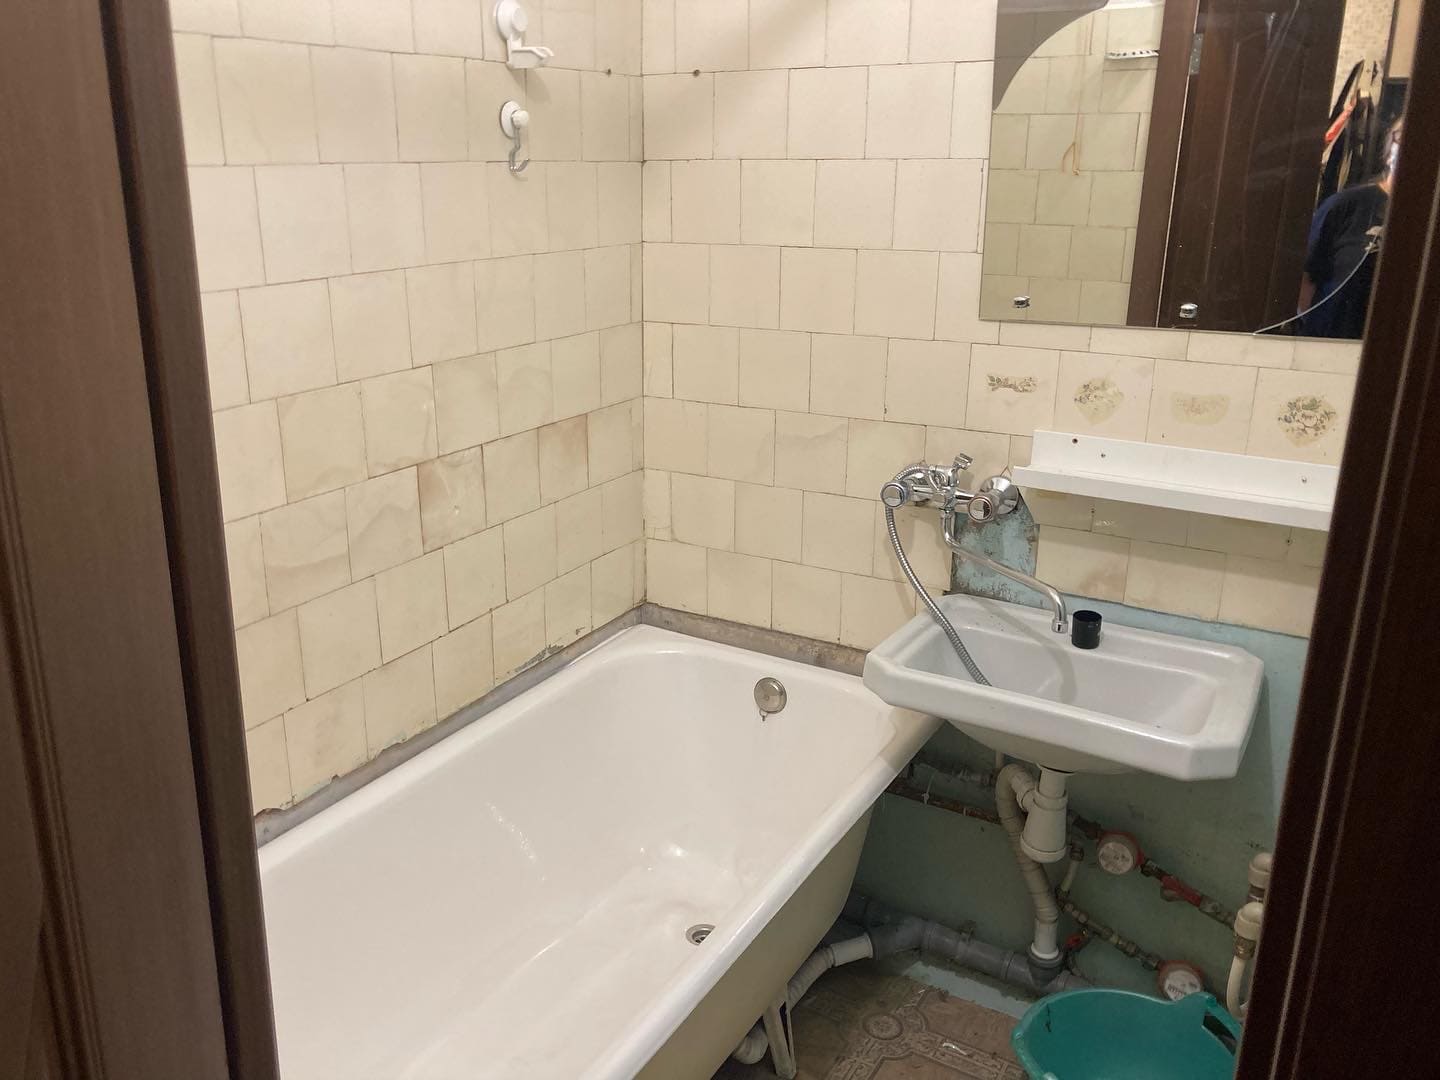 Капитальный ремонт ванной комнаты – фото до проведения работ